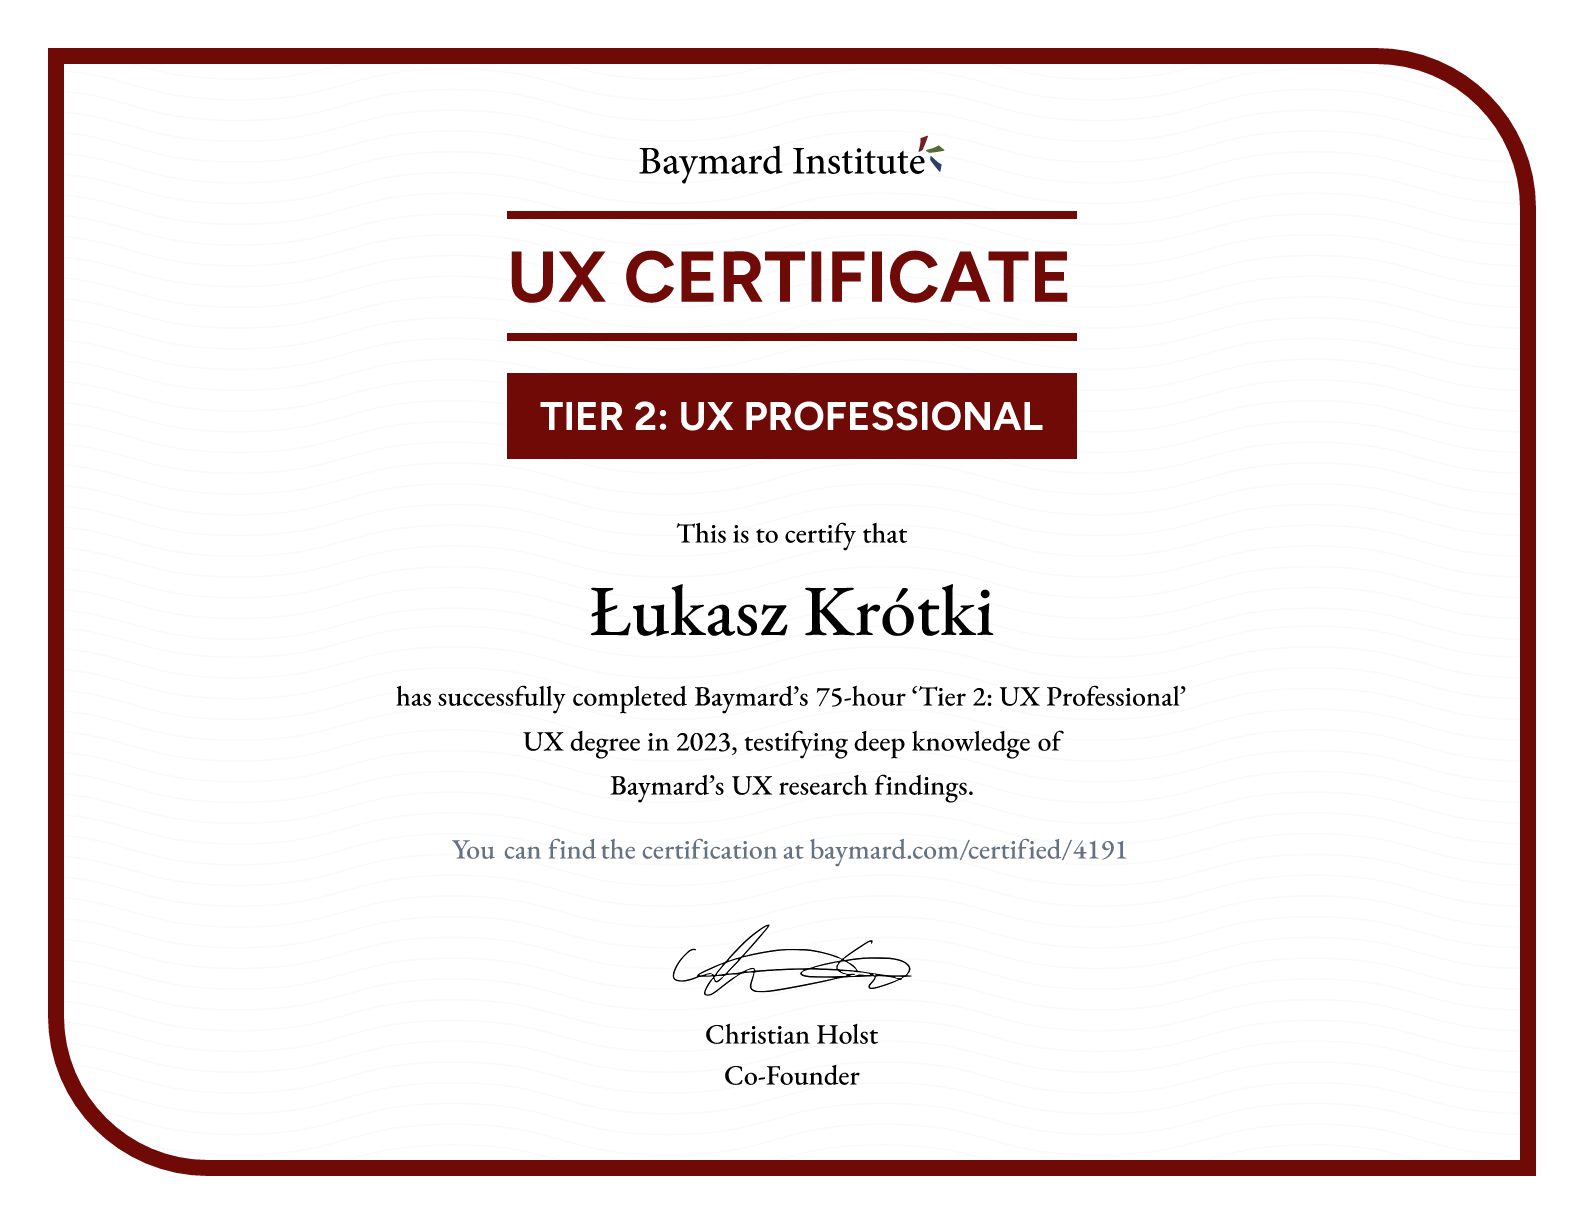 Łukasz Krótki’s certificate